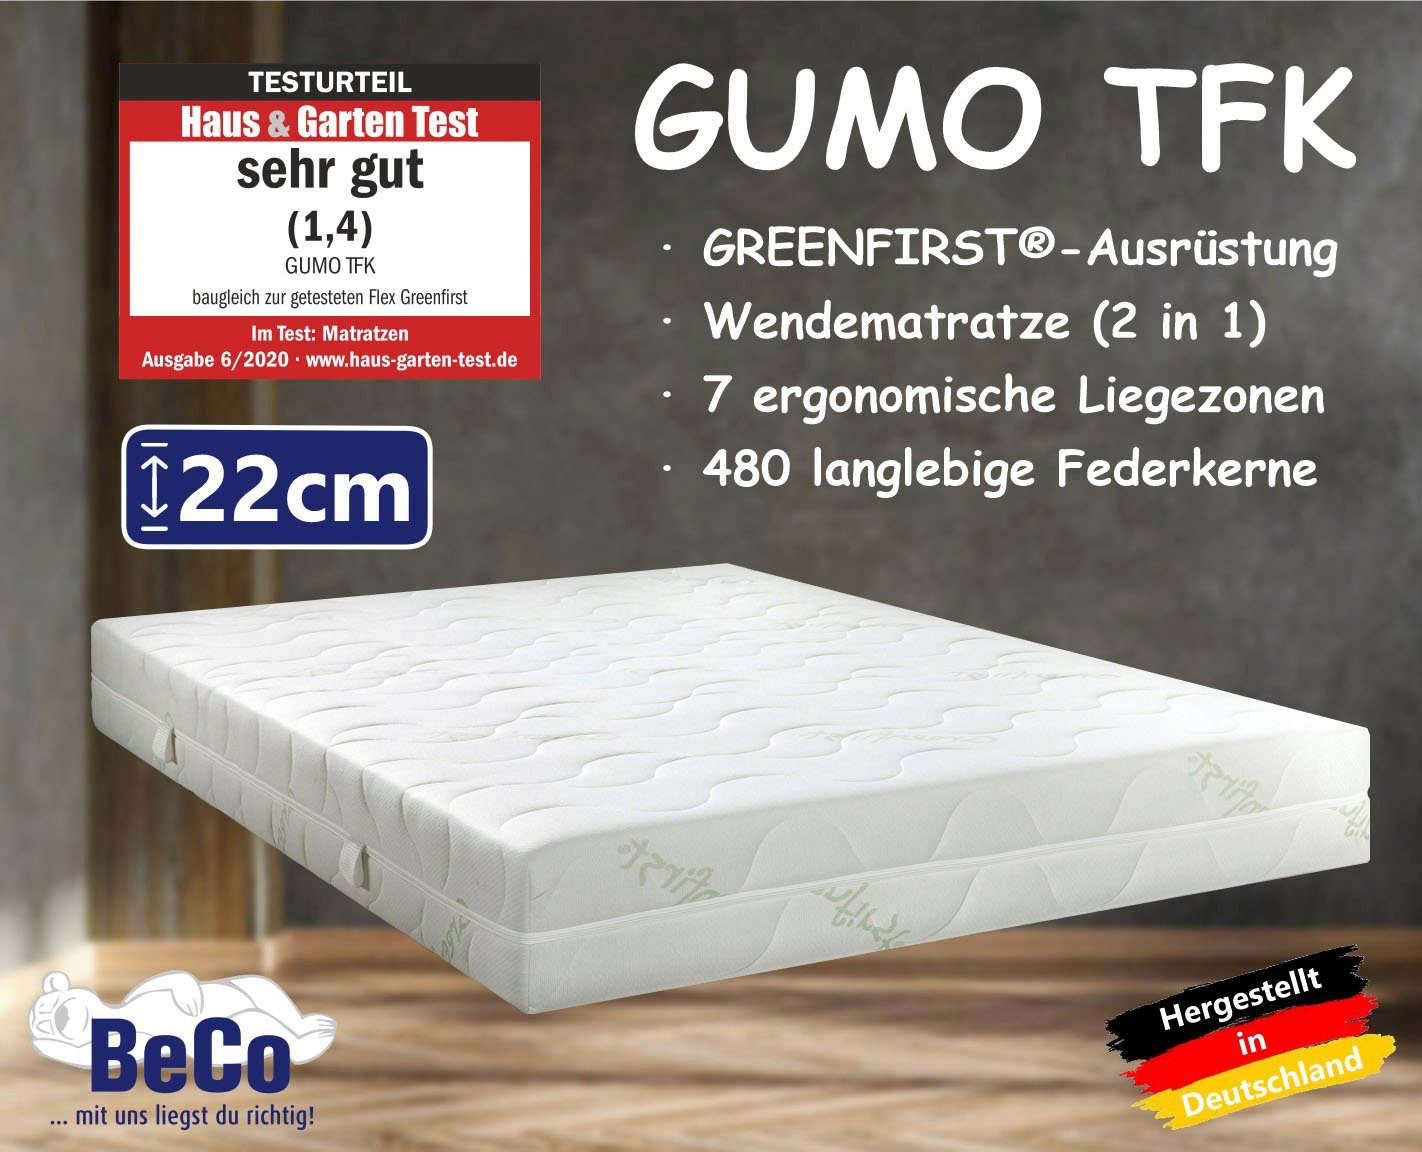 Taschenfederkernmatratze GUMO TFK, Beco, 22 cm hoch, komfortable Matratze  in 90x200, 140x200 cm und weiteren Größen